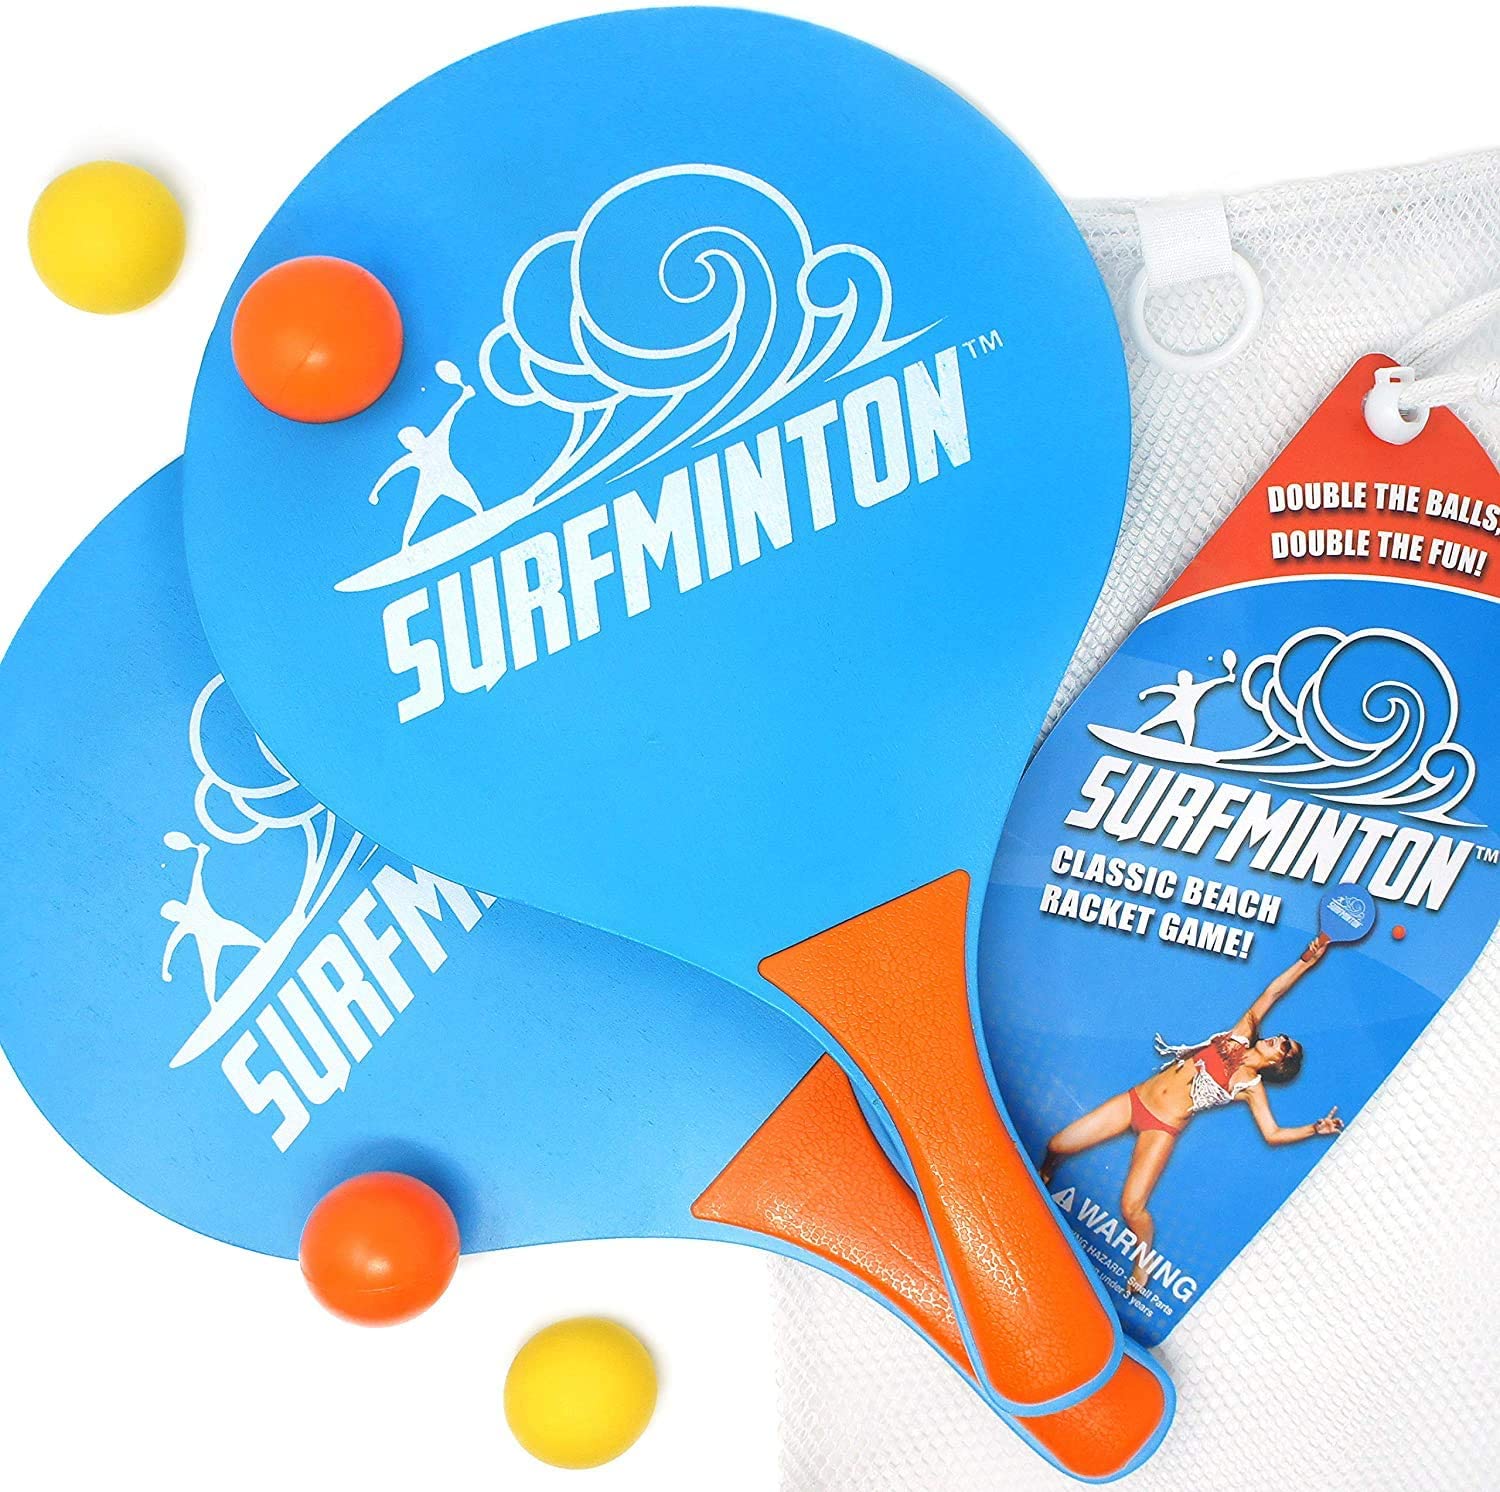 楽天市場 サーフミントン Surfminton ビーチテニス パドルゲーム ボール 4個 ラケット 2本 メッシュバッグ セット 屋外 防水 おもちゃ ファミリースポーツ 日本正規品 Rita Market